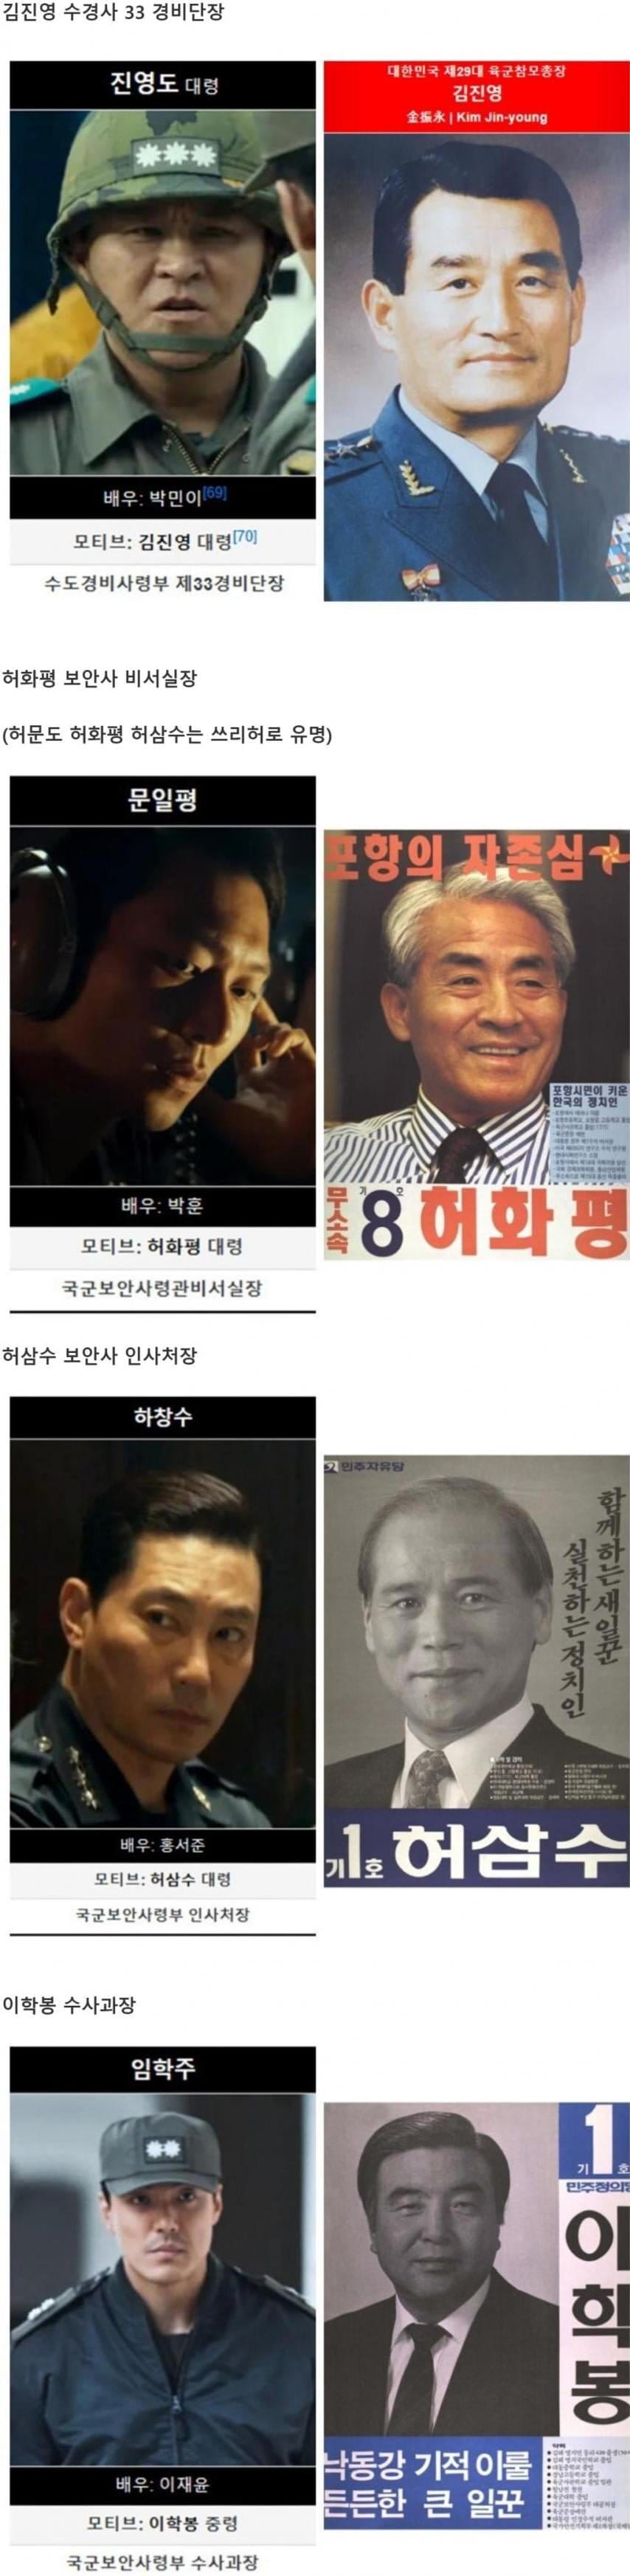 서울의 봄 실존 인물과 극중인물 비교